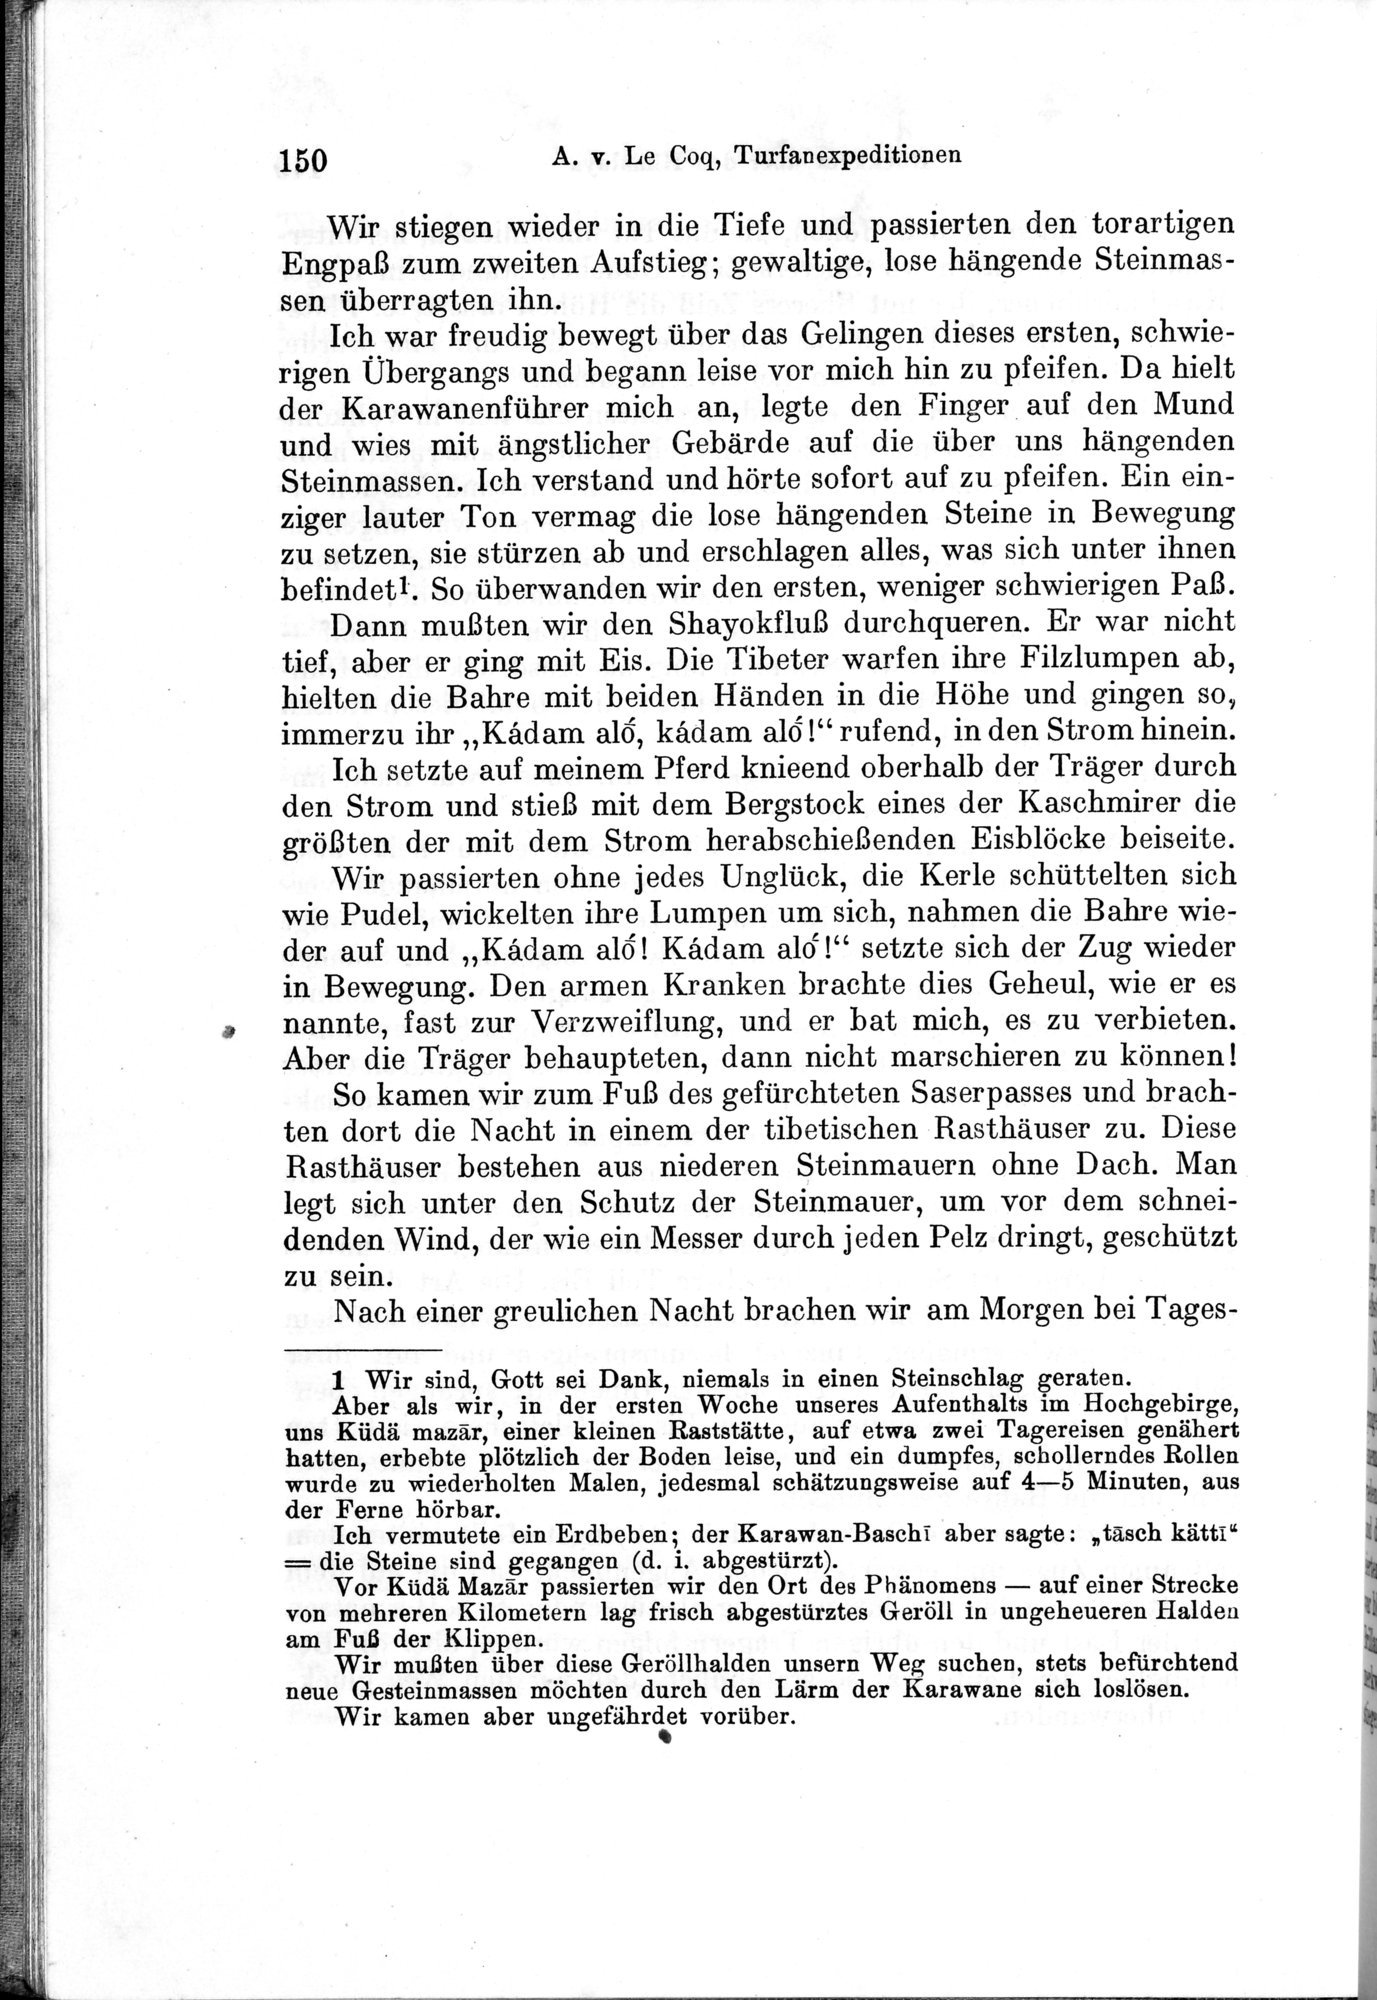 Auf Hellas Spuren in Ostturkistan : vol.1 / Page 214 (Grayscale High Resolution Image)